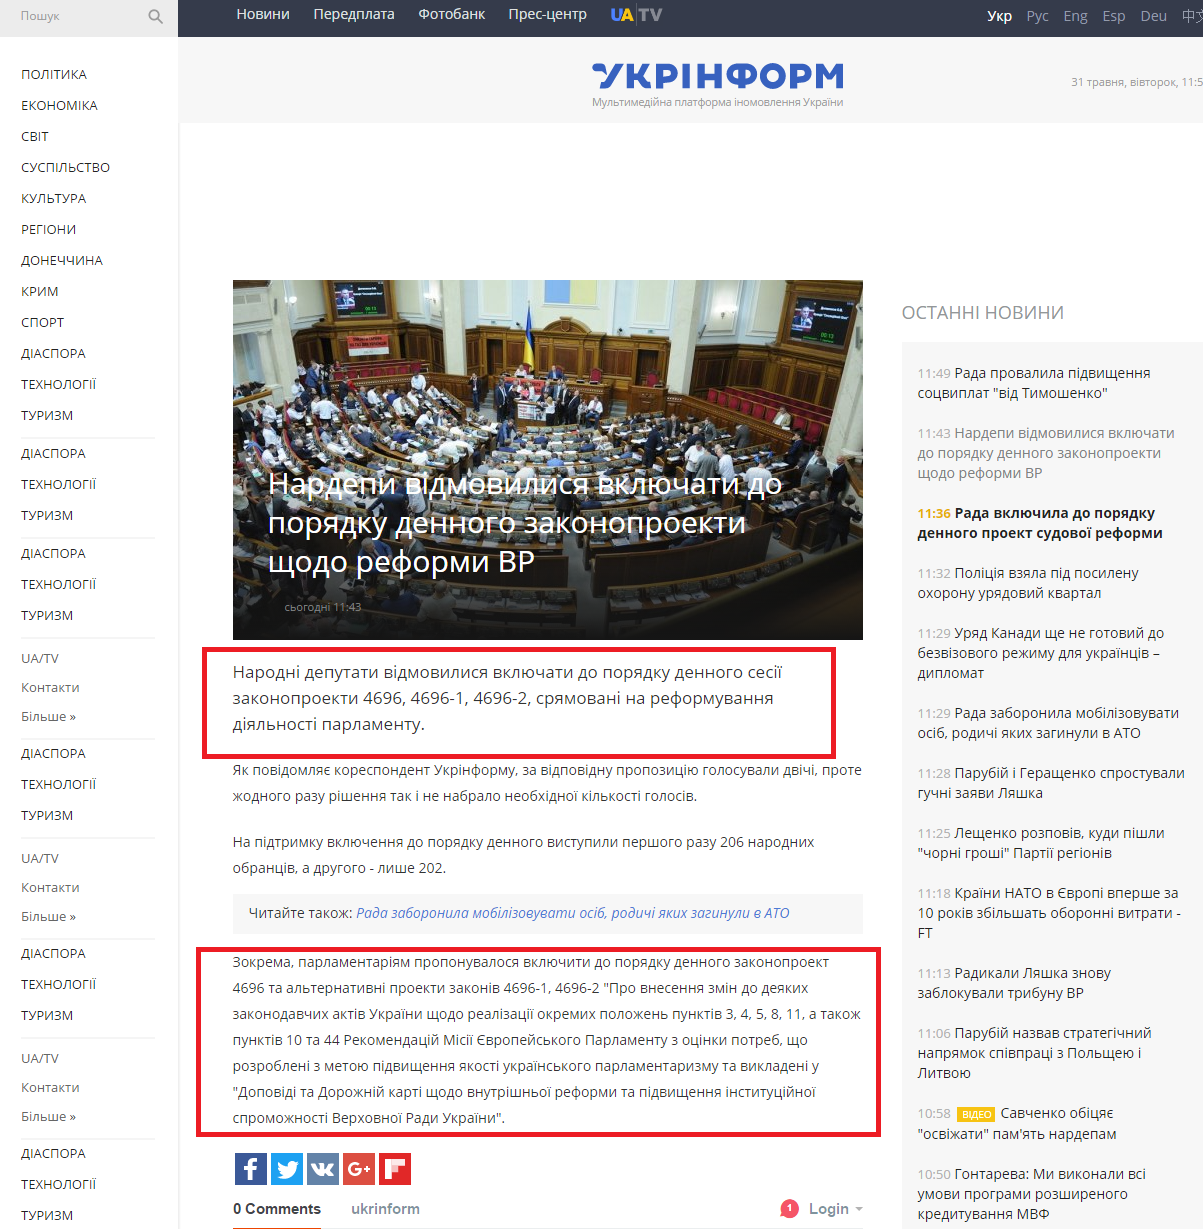 http://www.ukrinform.ua/rubric-politycs/2026422-nardepi-vidmovilisa-vklucati-do-poradku-dennogo-zakonoproekti-sodo-reformi-vr.html